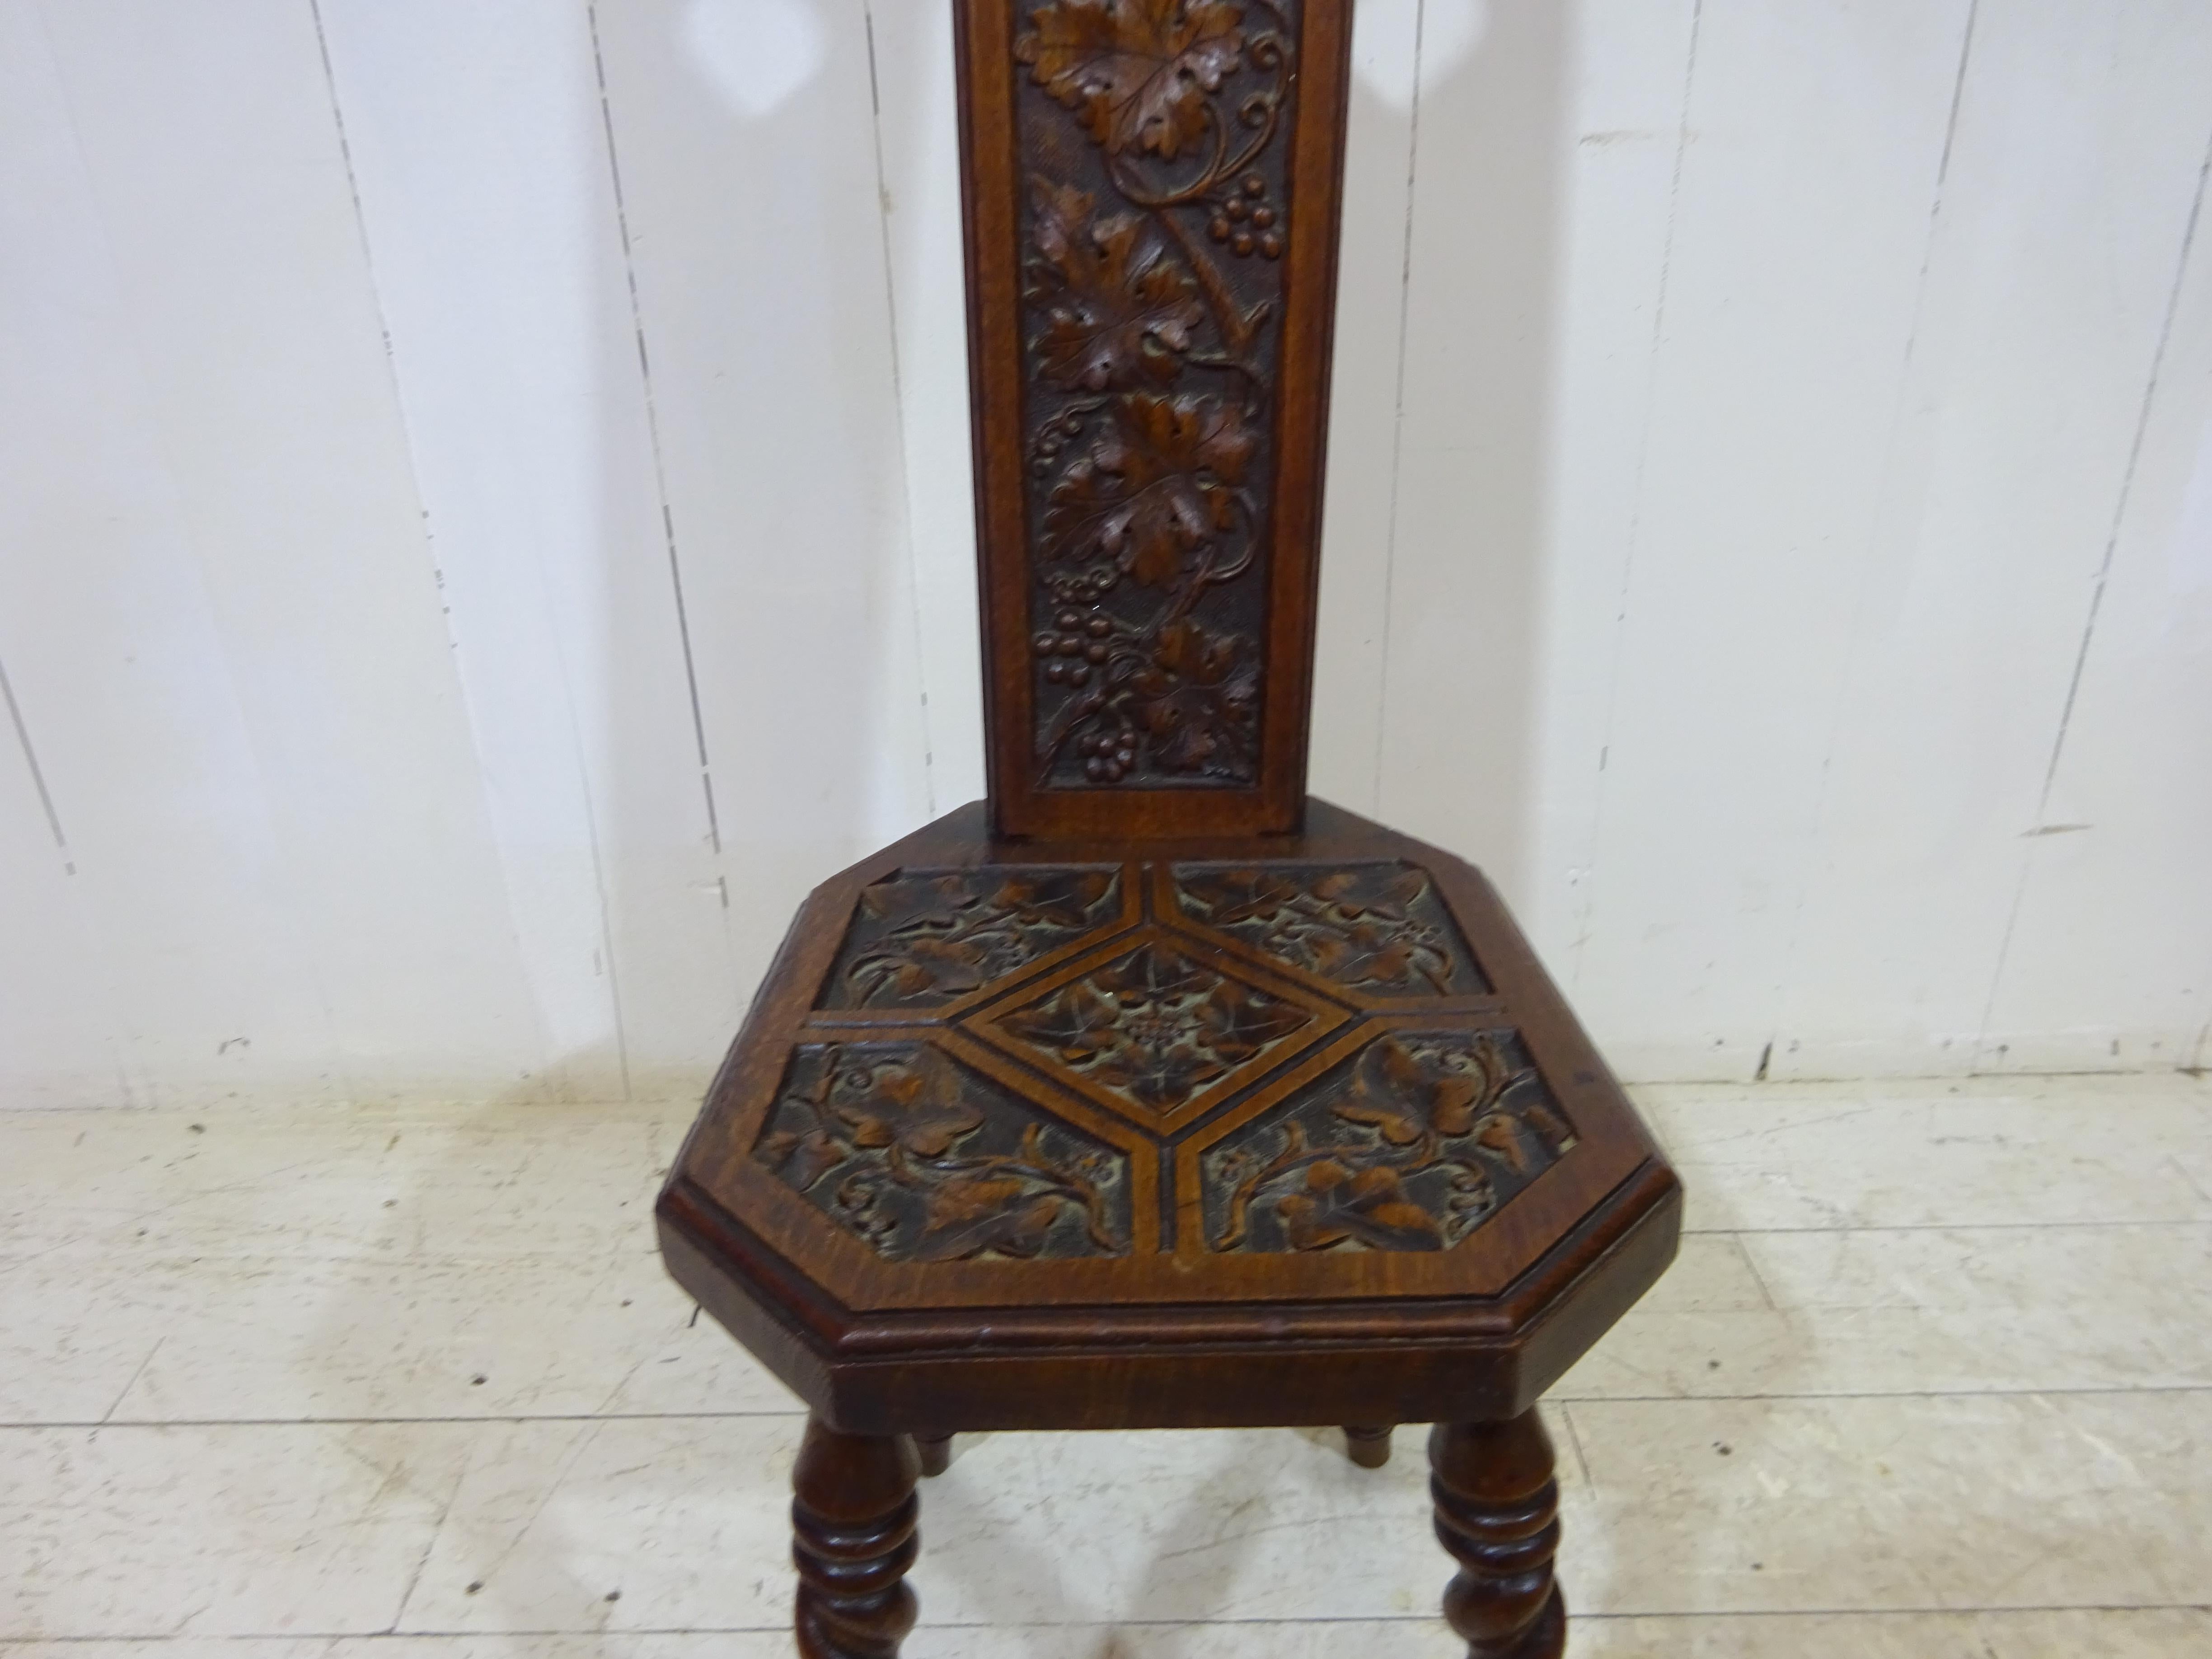 Wir stellen Ihnen unseren exquisiten, handgeschnitzten viktorianischen Sessel vor - ein wahres Meisterwerk viktorianischer Handwerkskunst. Der aus massivem Eichenholz gefertigte Stuhl zeichnet sich durch ein wunderschönes, detailliertes